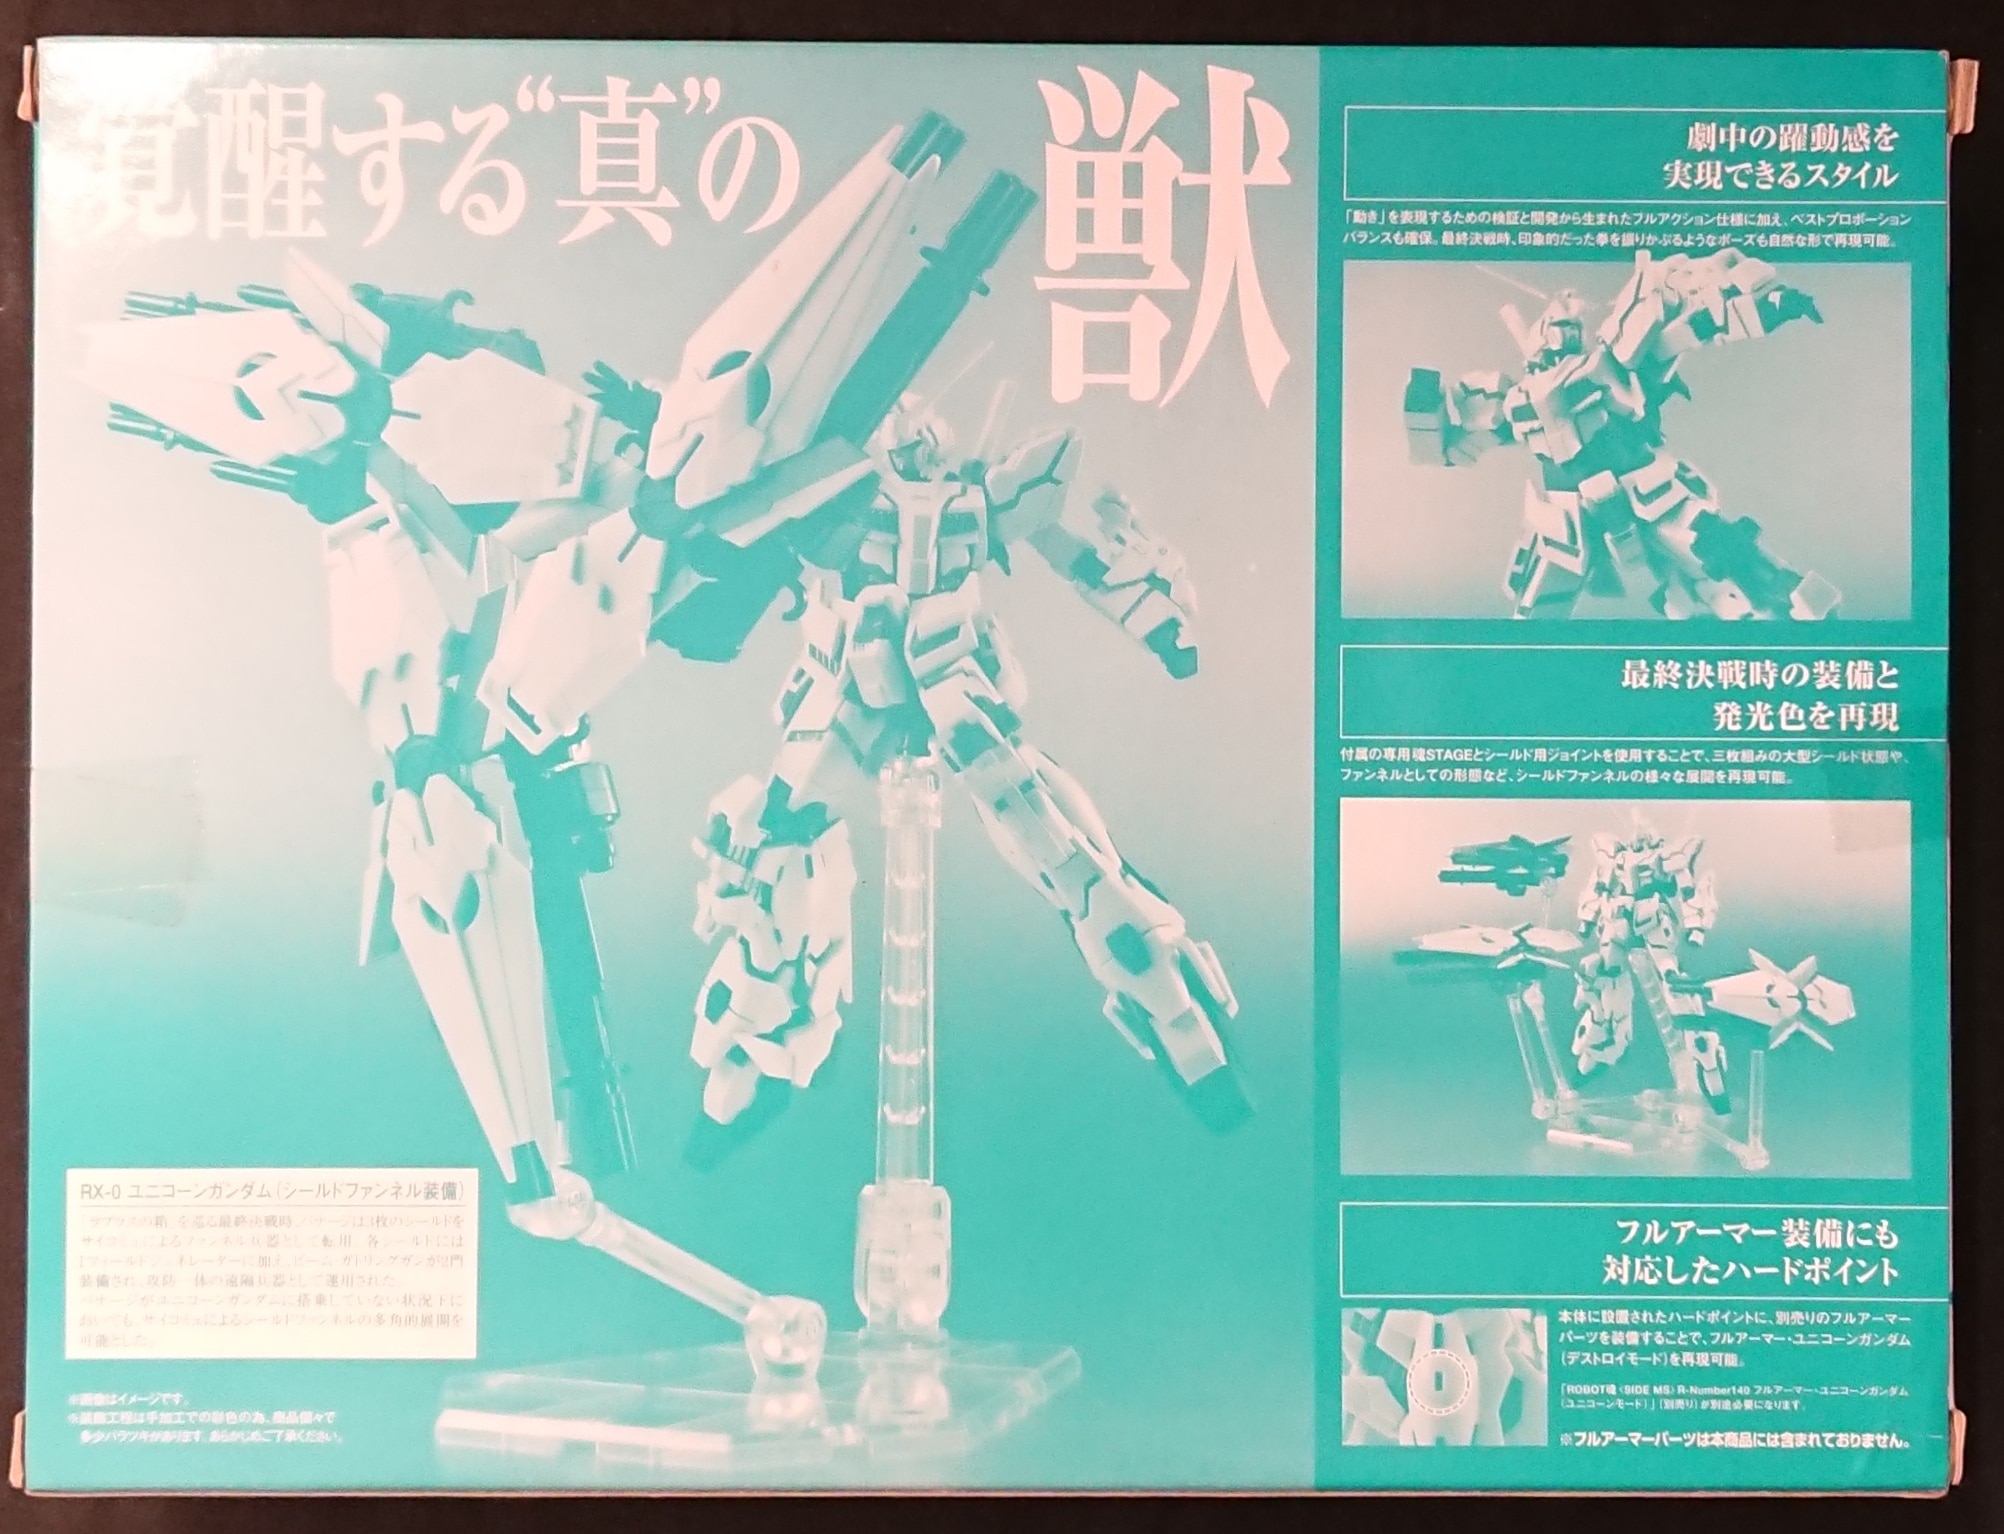 バンダイ Robot魂 機動戦士ガンダムuc ユニコーンガンダム シールドファンネル装備ver Unicorn Gundam With Shield Fannel まんだらけ Mandarake